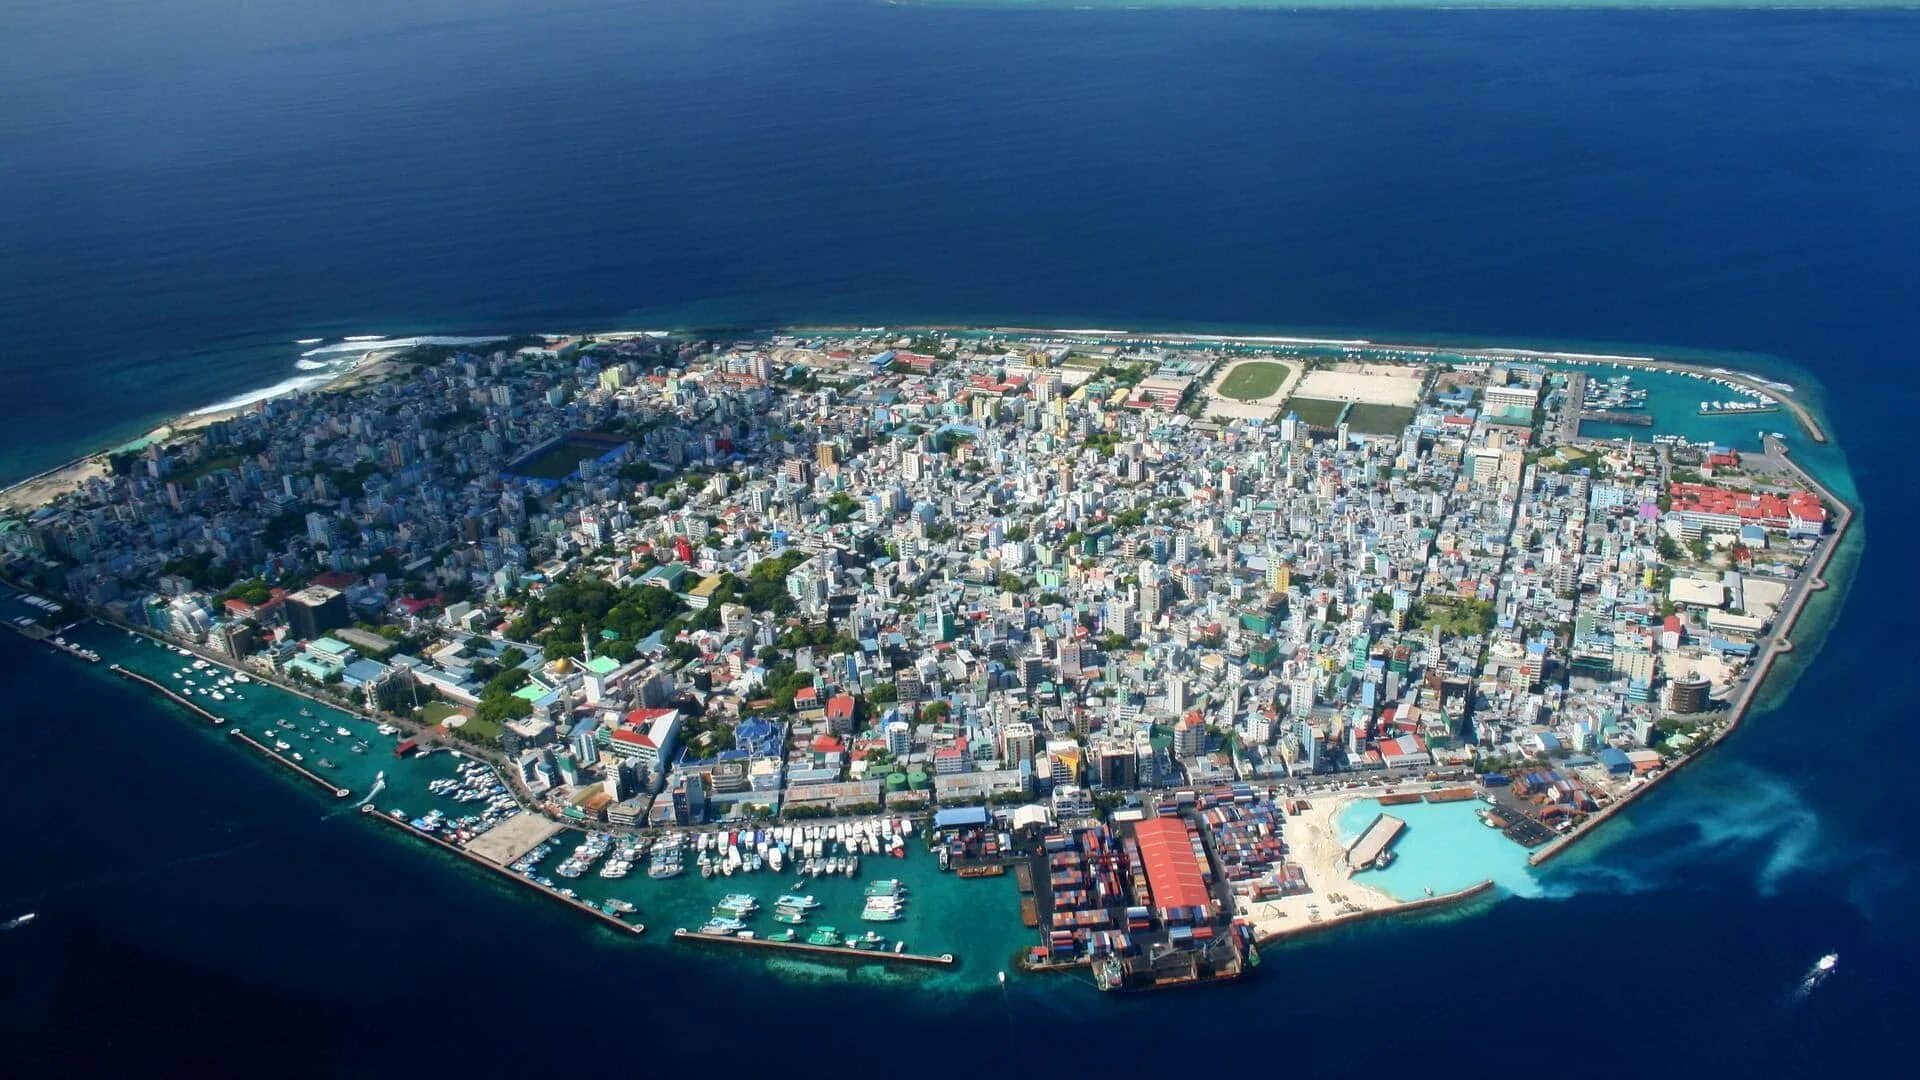 The world smallest country is. Город Мале Мальдивы. Столица Мальдивских островов. Мале столица Мальдив фото. Мале столица Мальдив аэропорт.